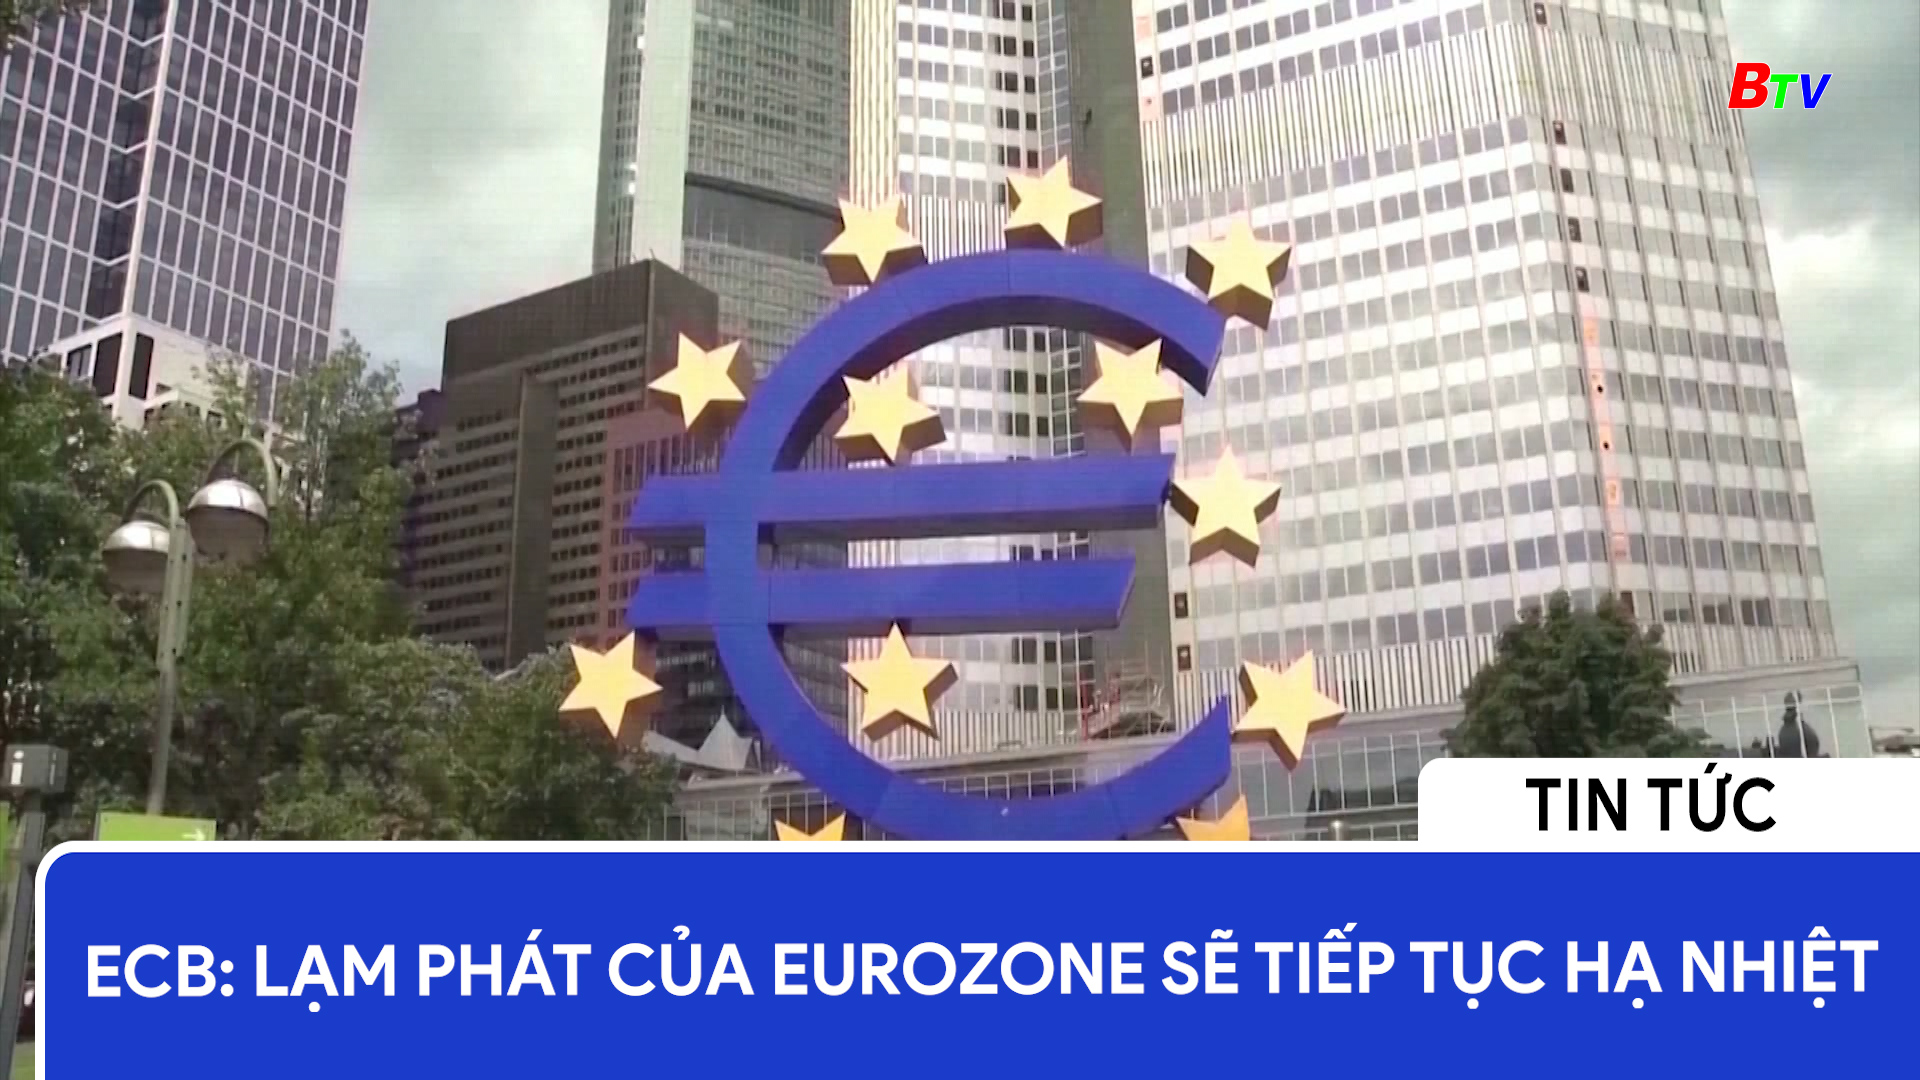 ECB: lạm phát của Eurozone sẽ tiếp tục hạ nhiệt	